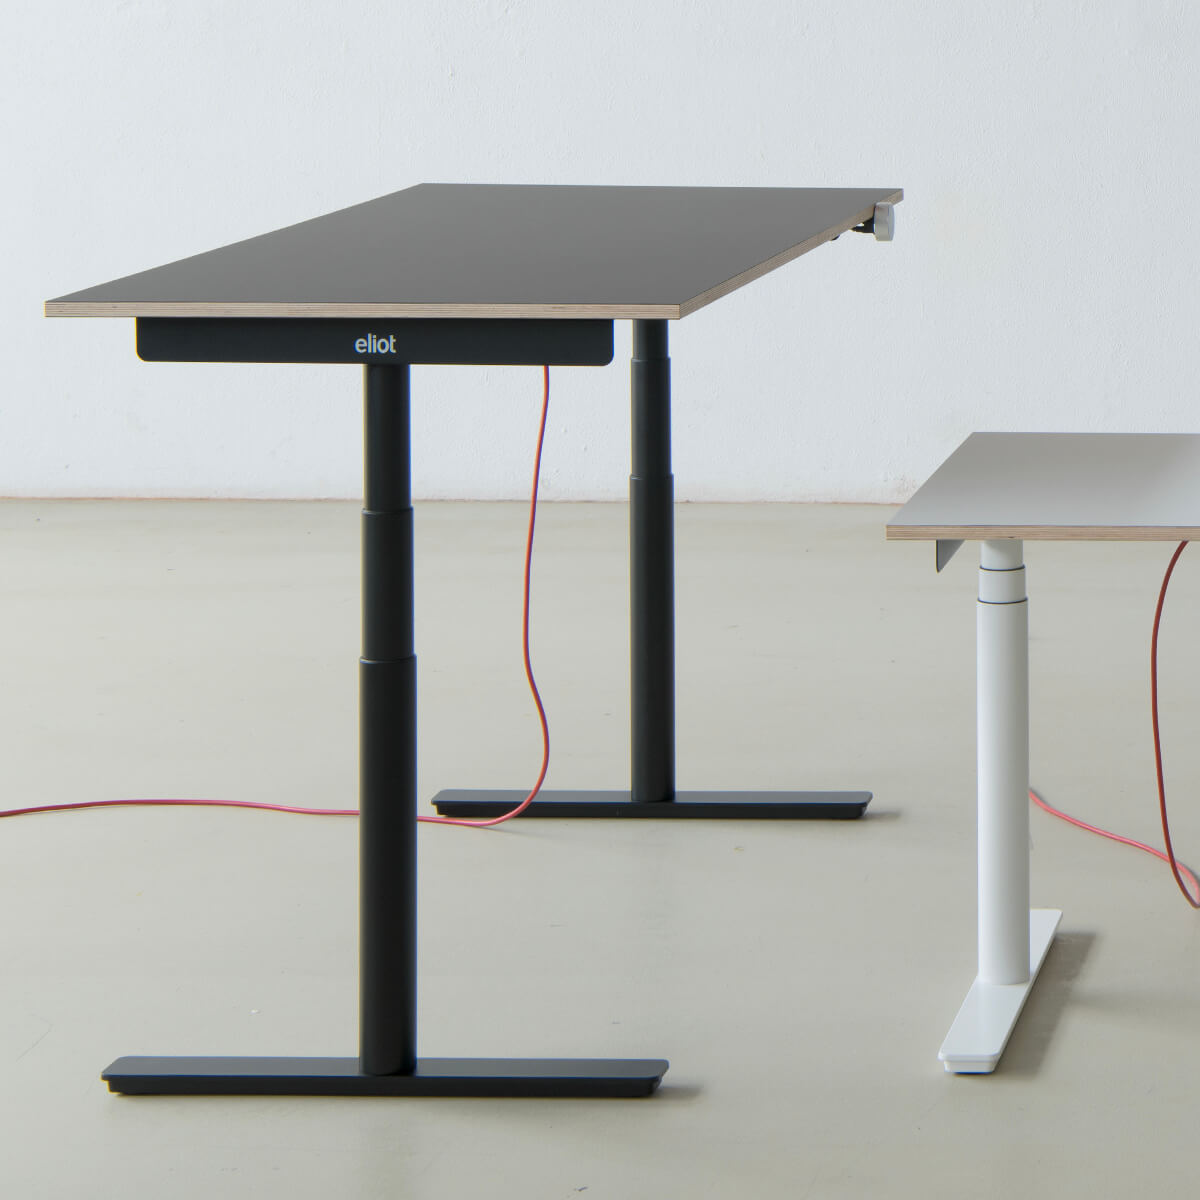 Profil eines schwarzen Eliot-Tisches mit grauer Tischplatte in einem leeren Raum neben einem kleinen Eliot in weiß